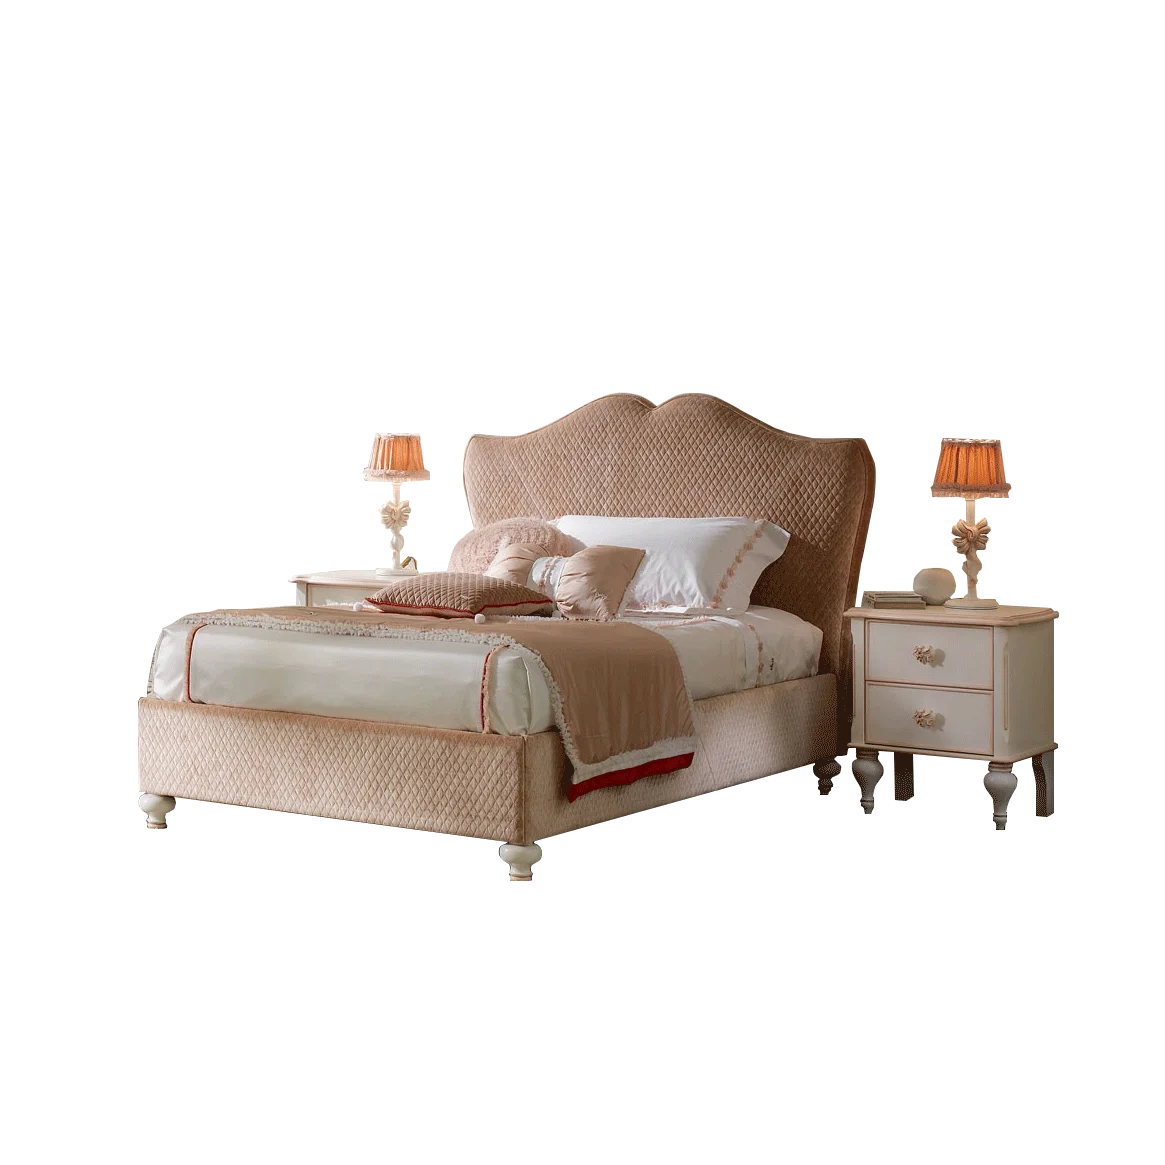 

Простая Современная тканевая детская кровать для девочки принцессы европейская роскошная односпальная кровать мечта розовая мягкая кровать для девочки